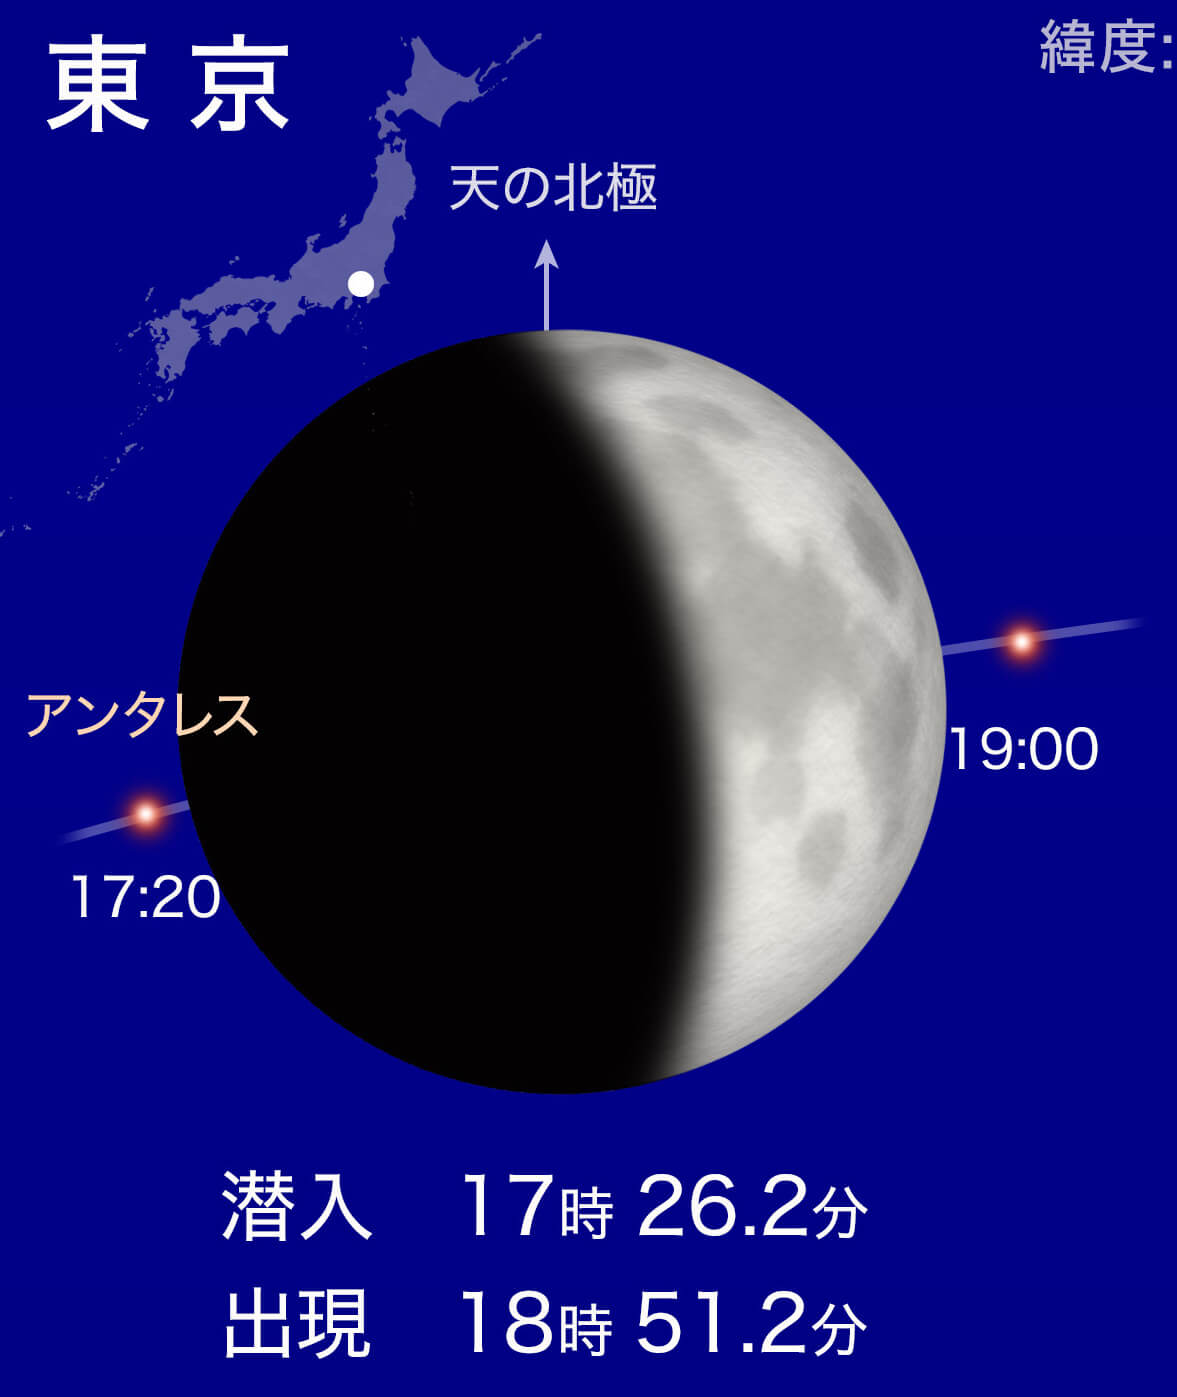 9月21日の日没前後は日本全国で月がアンタレスを隠す「アンタレス食」